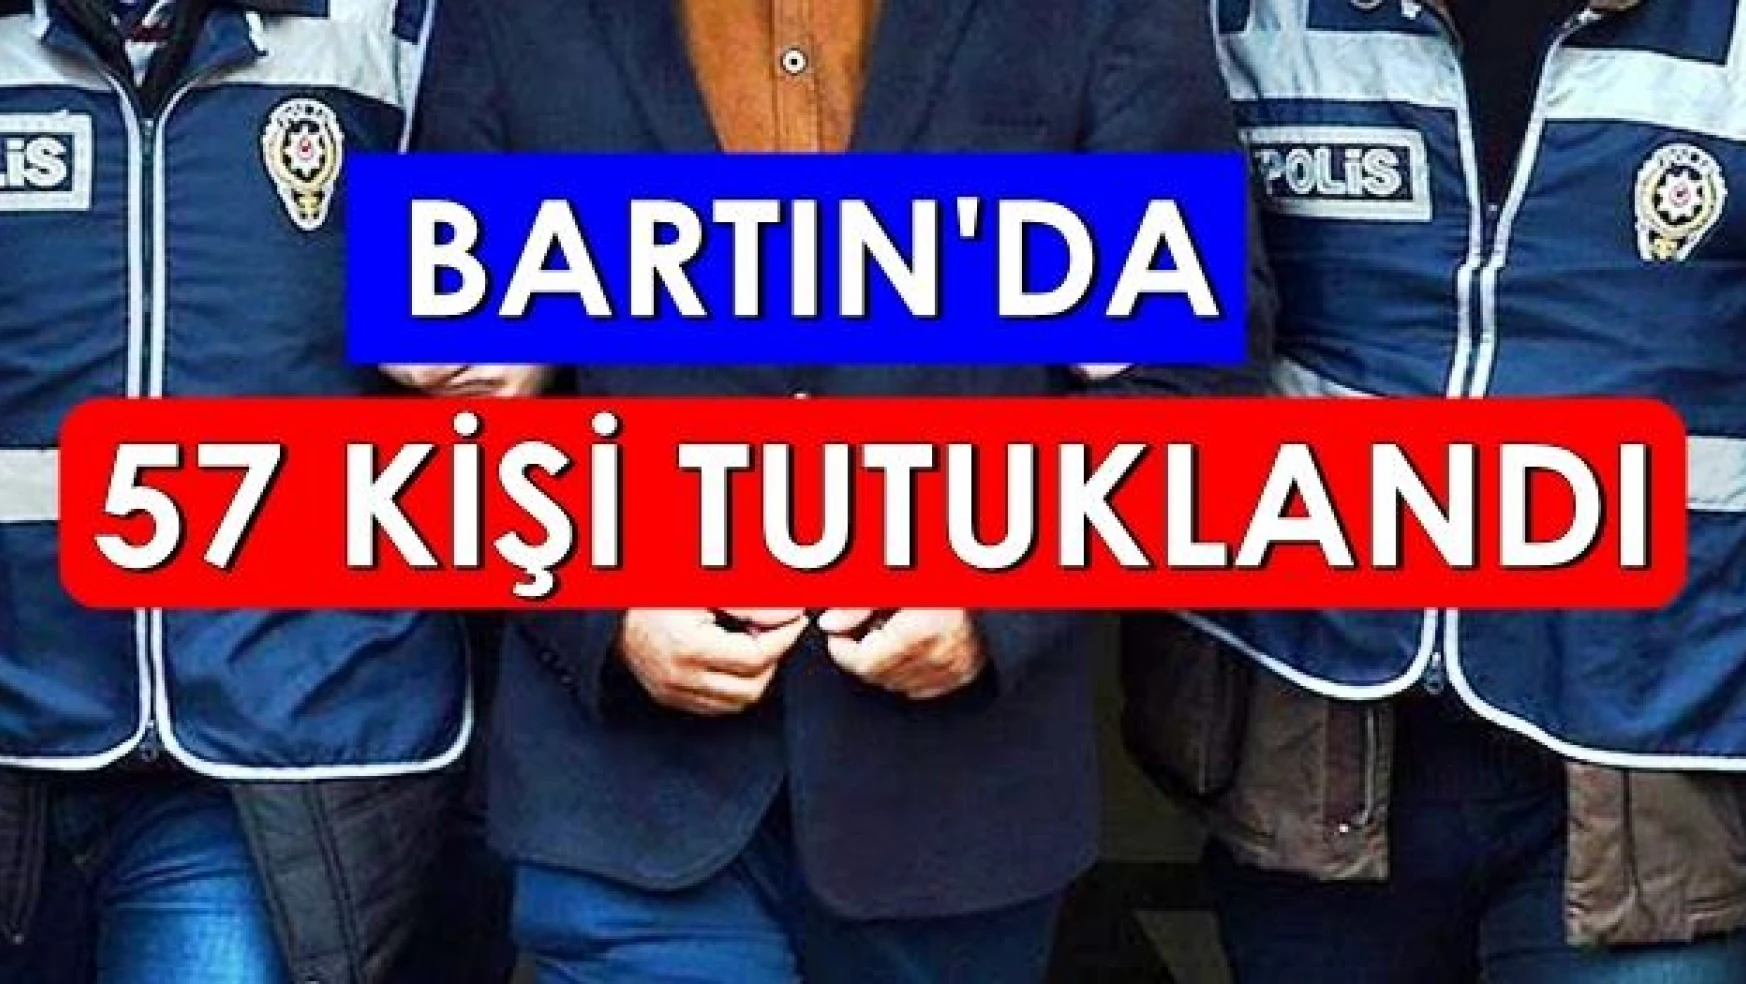 Bartın'da FETÖ Soruşturmasında 57 kişi tutuklandı